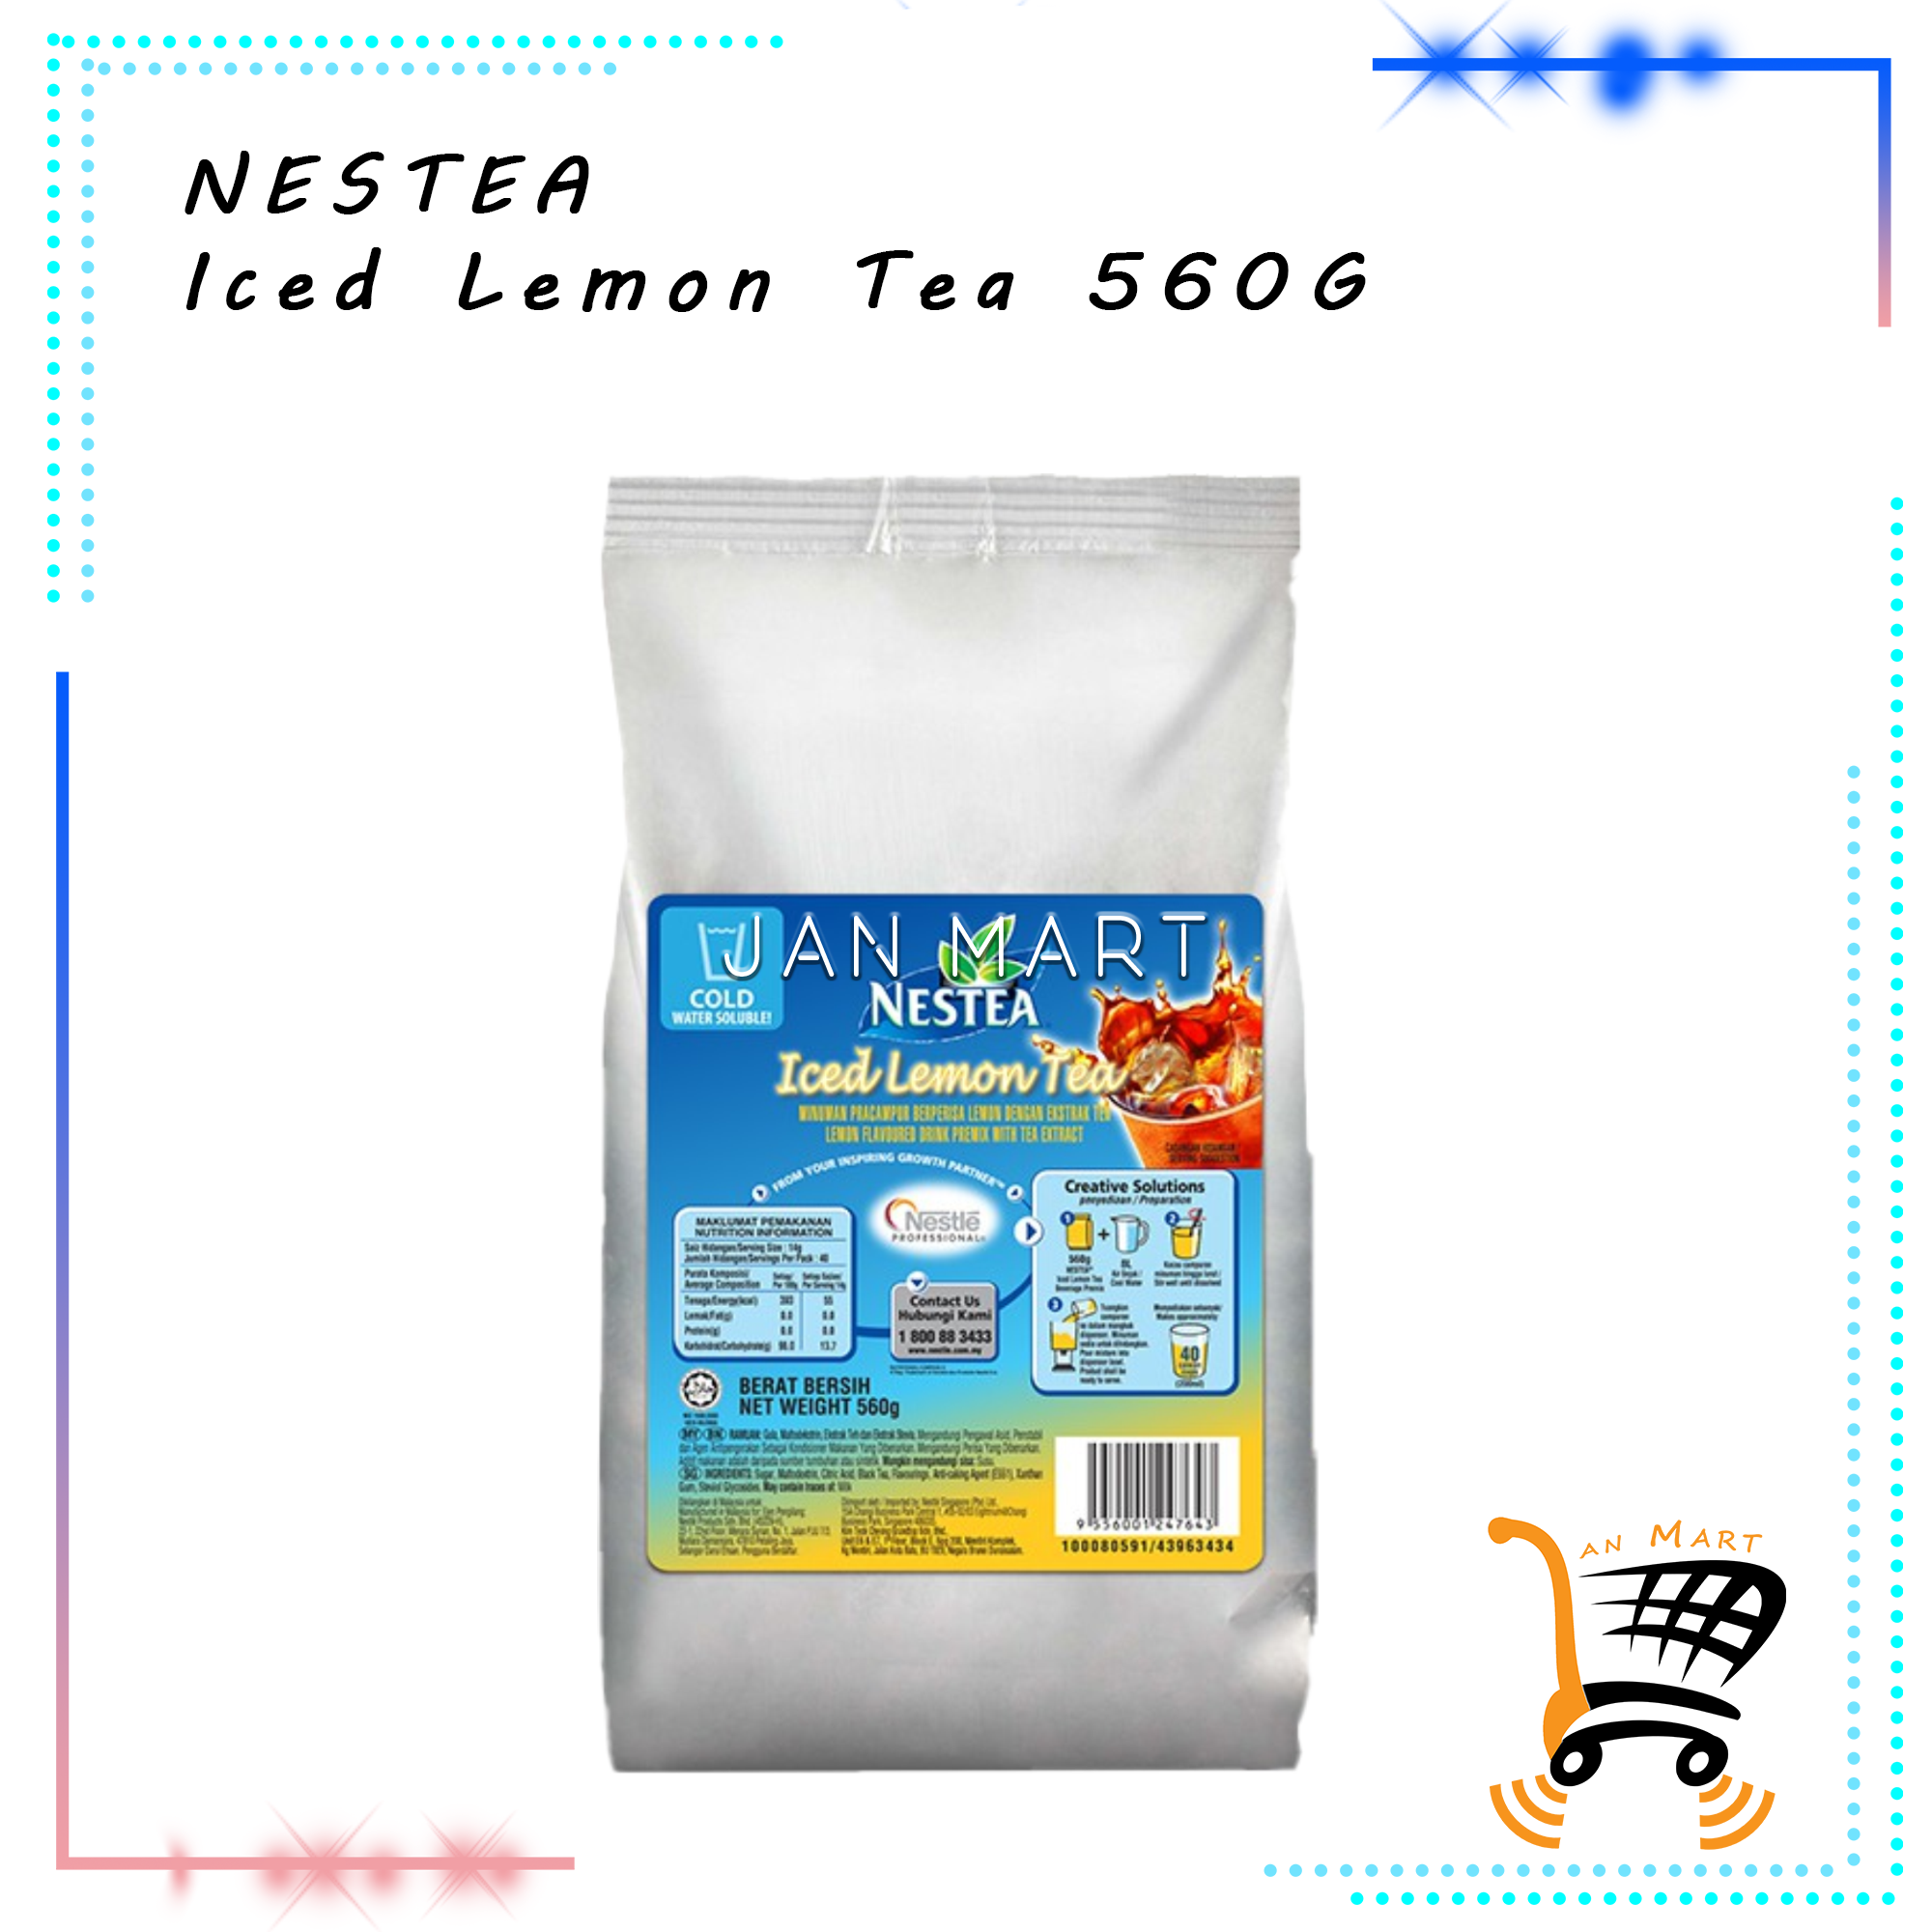 NESTEA Iced Lemon Tea 560G